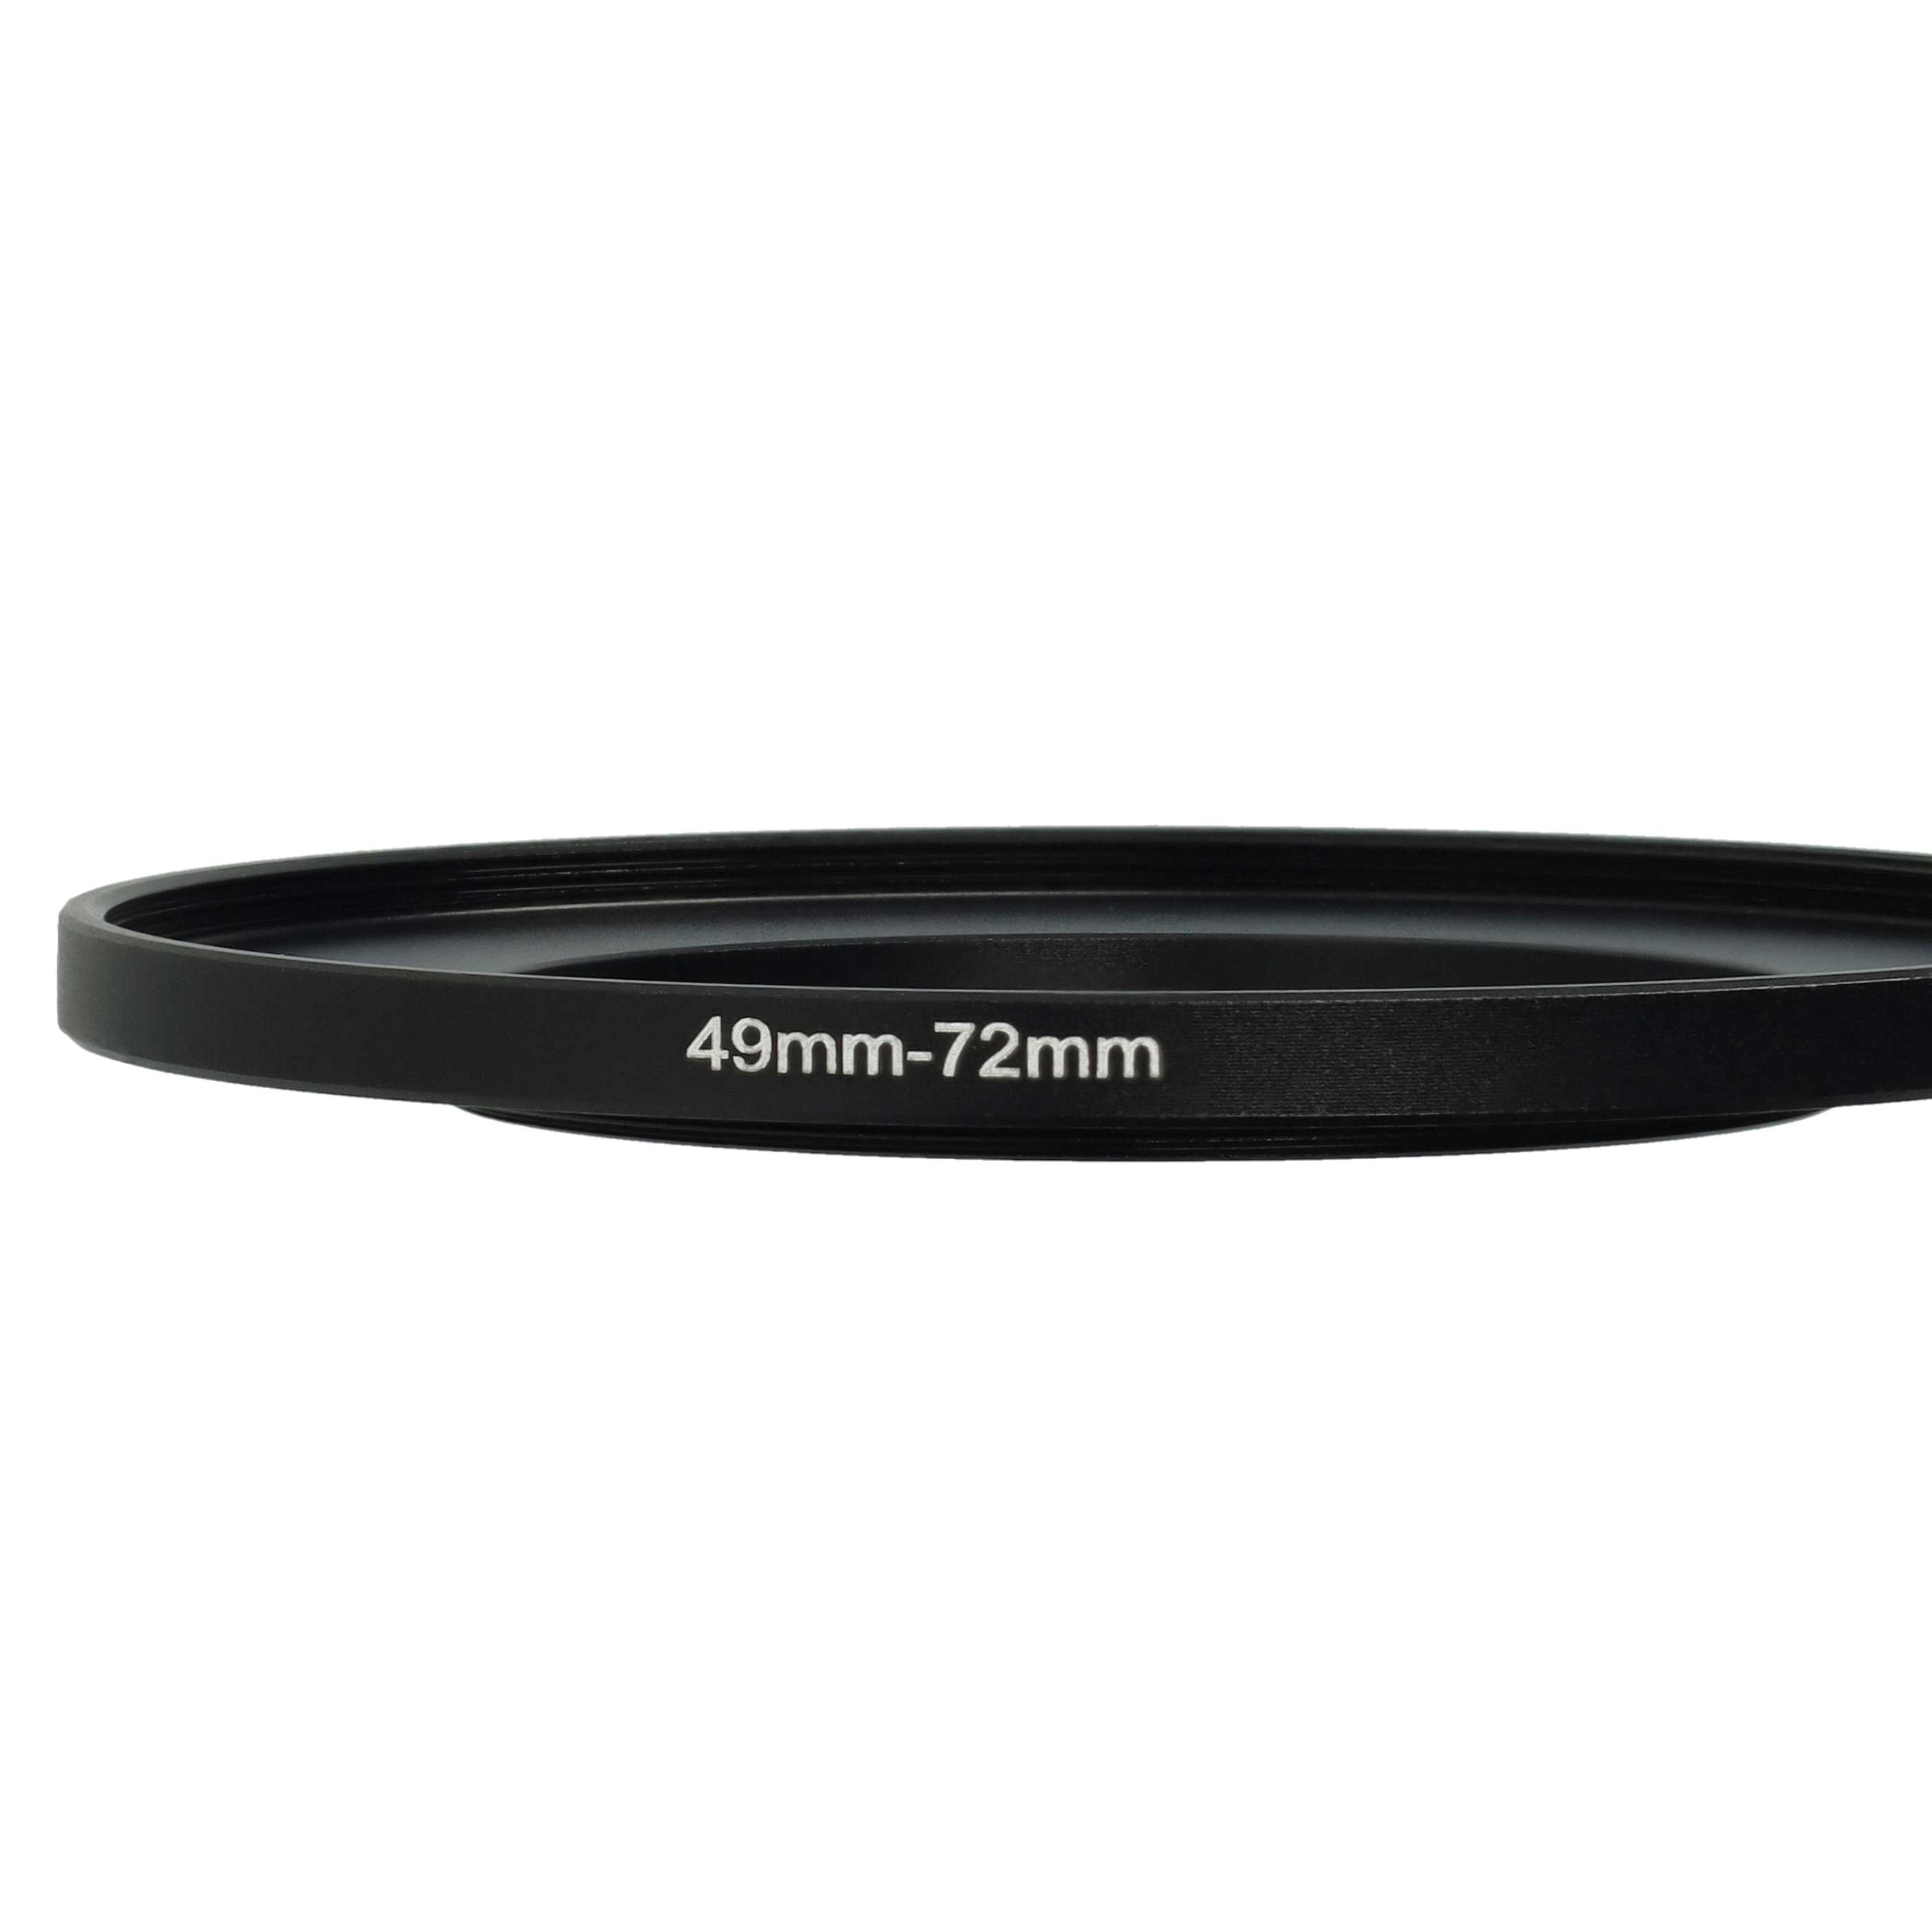 Step-Up-Ring Adapter 49 mm auf 72 mm passend für diverse Kamera-Objektive - Filteradapter